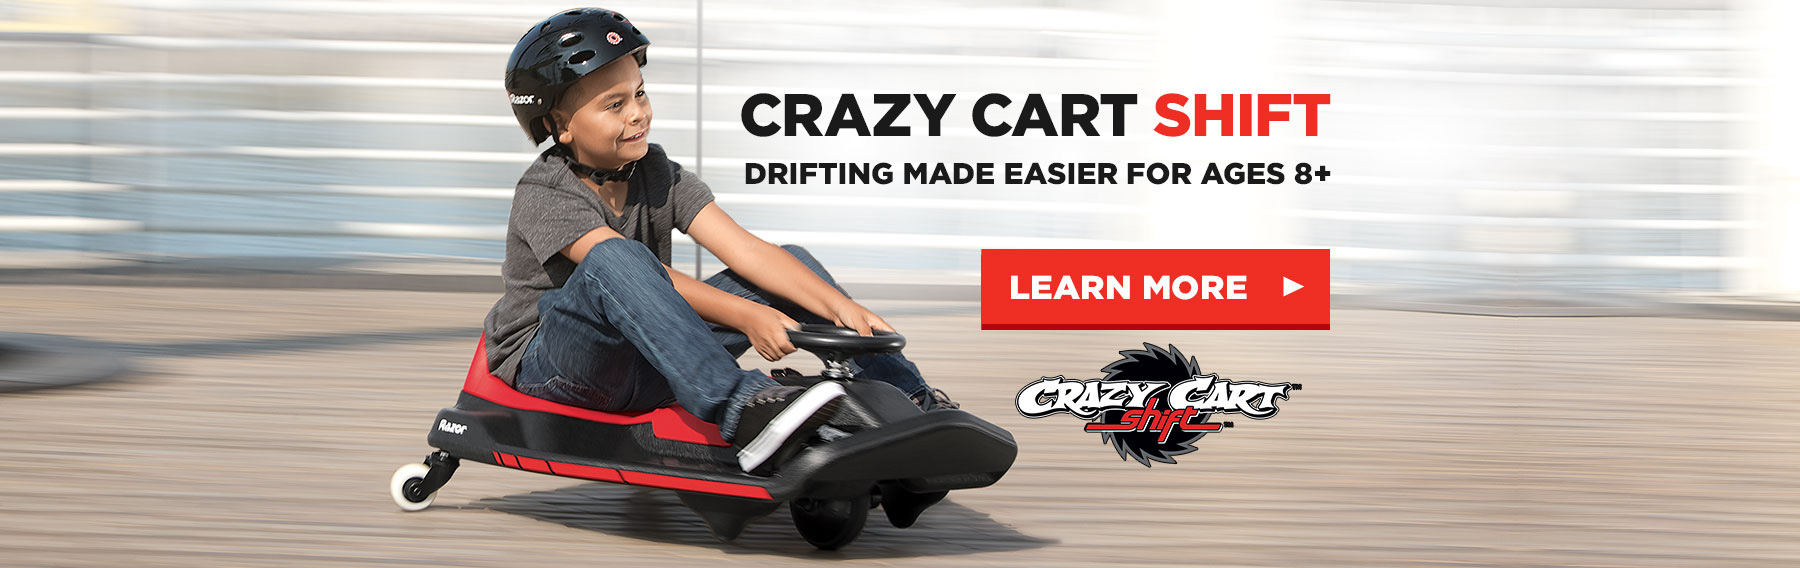 Xe điện quay tròn Razor Crazy Cart Shift Drift 